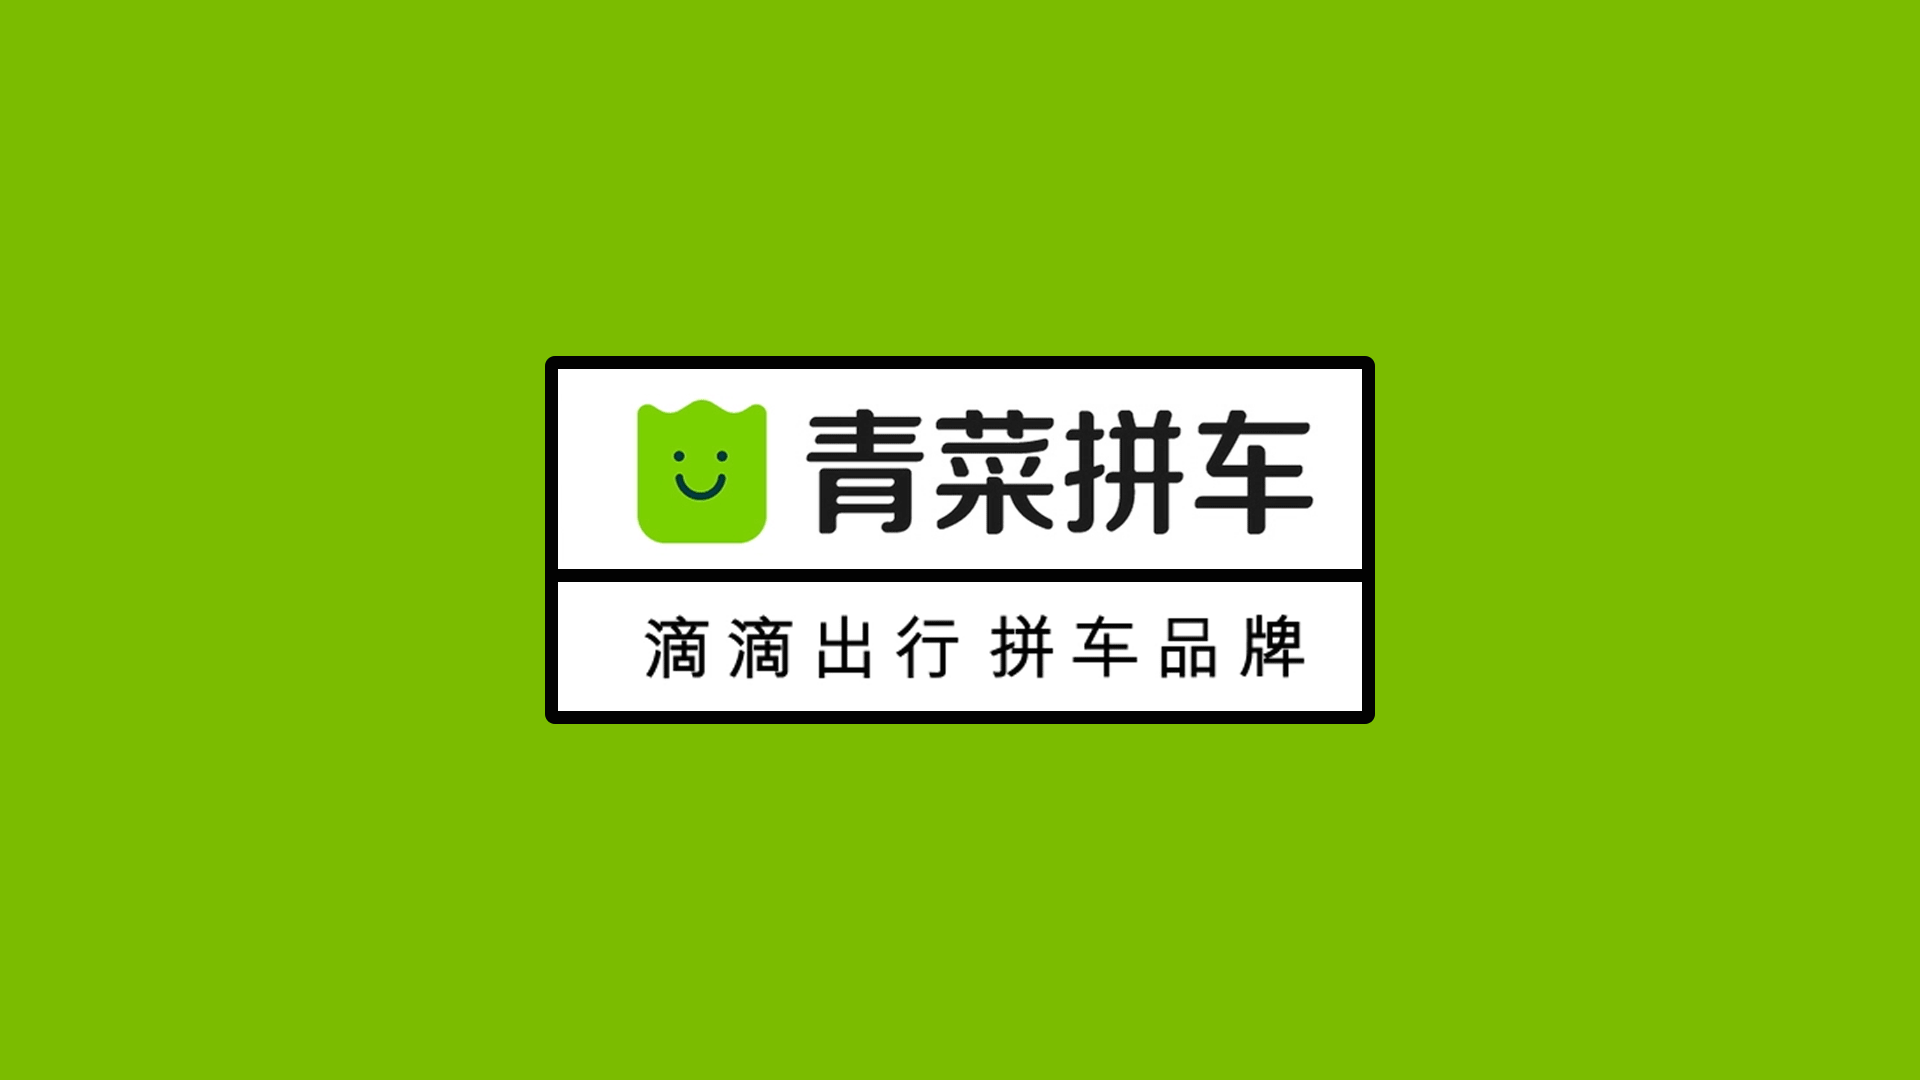 青菜拼车的新logo